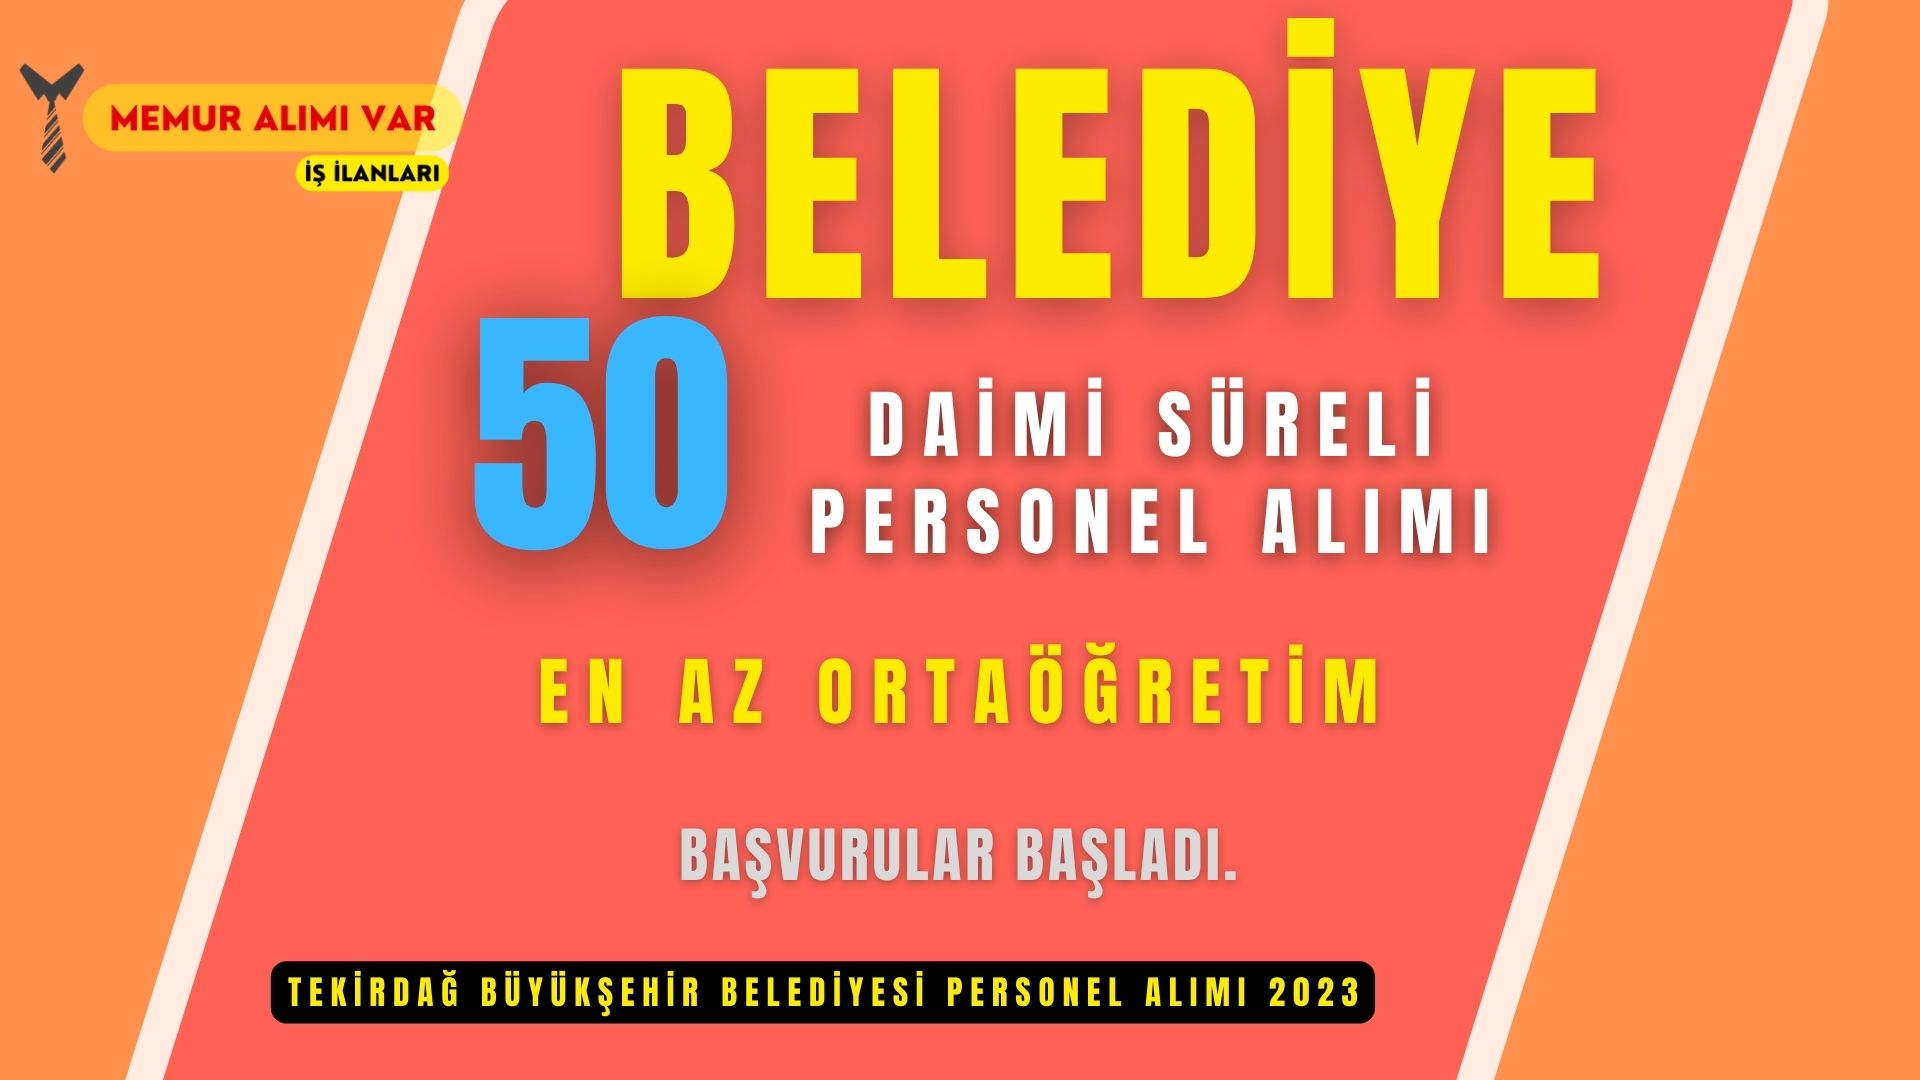 Tekirdağ Büyükşehir Belediyesi 50 Personel Alımı 2023 Başvuru Sayfası